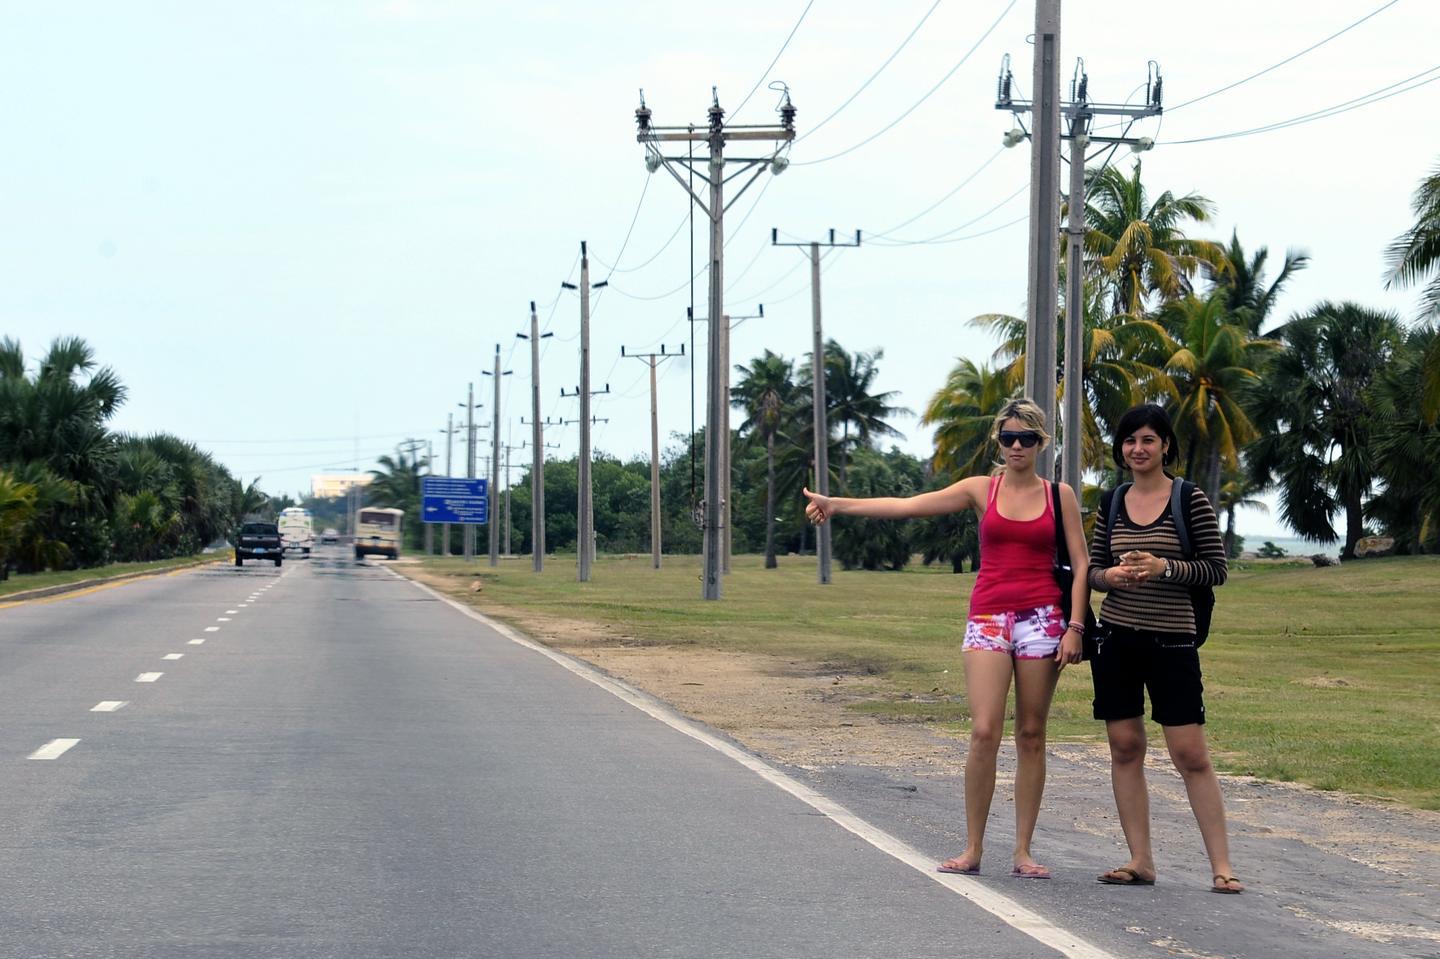 Jour. Extérieur. Vue de la route avec un panneau de signalisation, des camions en arrière-plan et deux femmes sur le côté, les mains tendues, arrêtant des voitures.